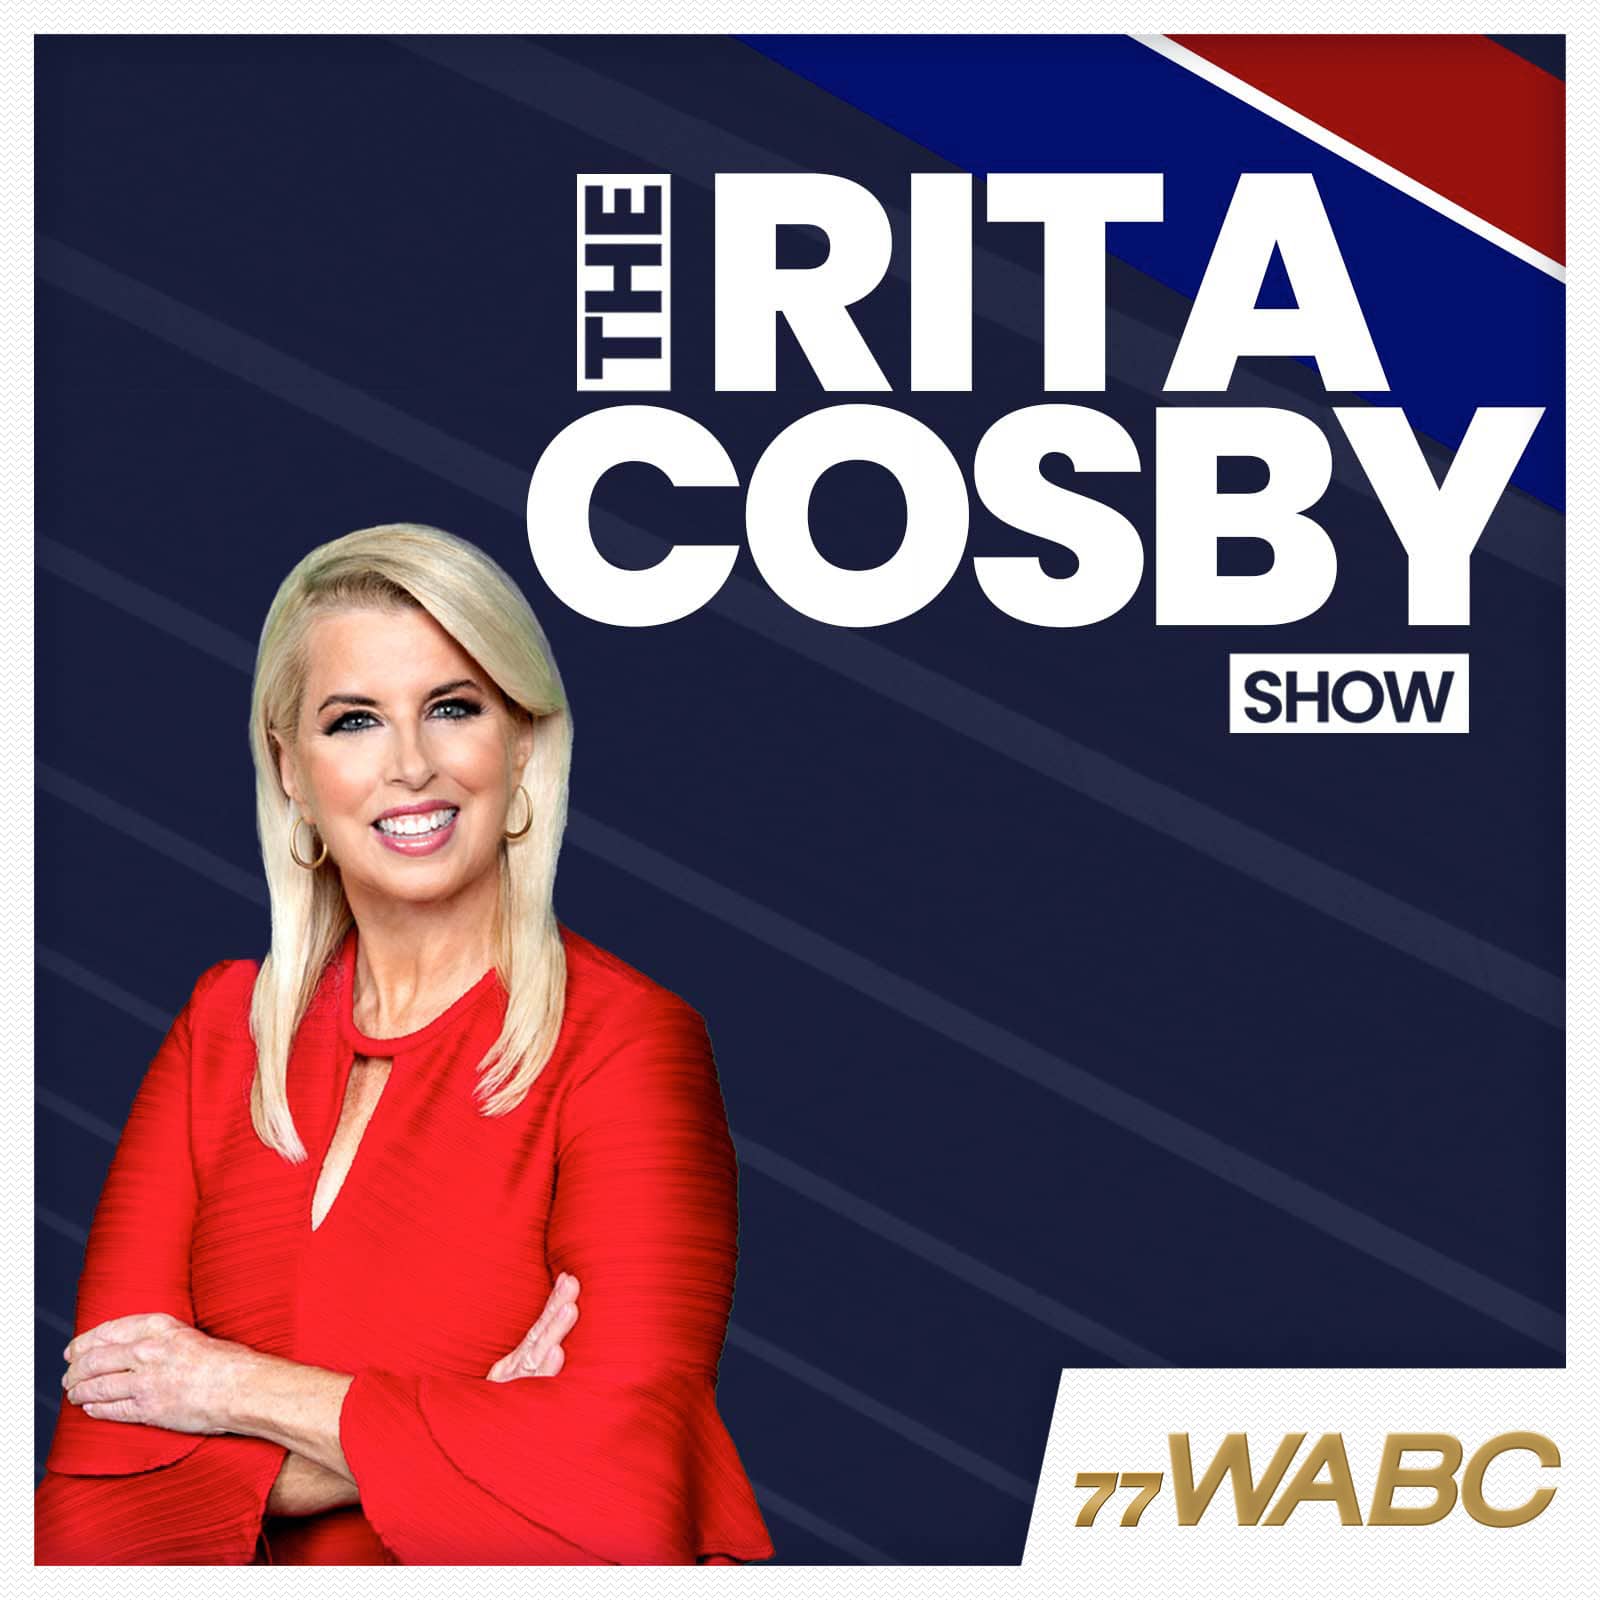 rita-cosby-podcast-new-logo-348